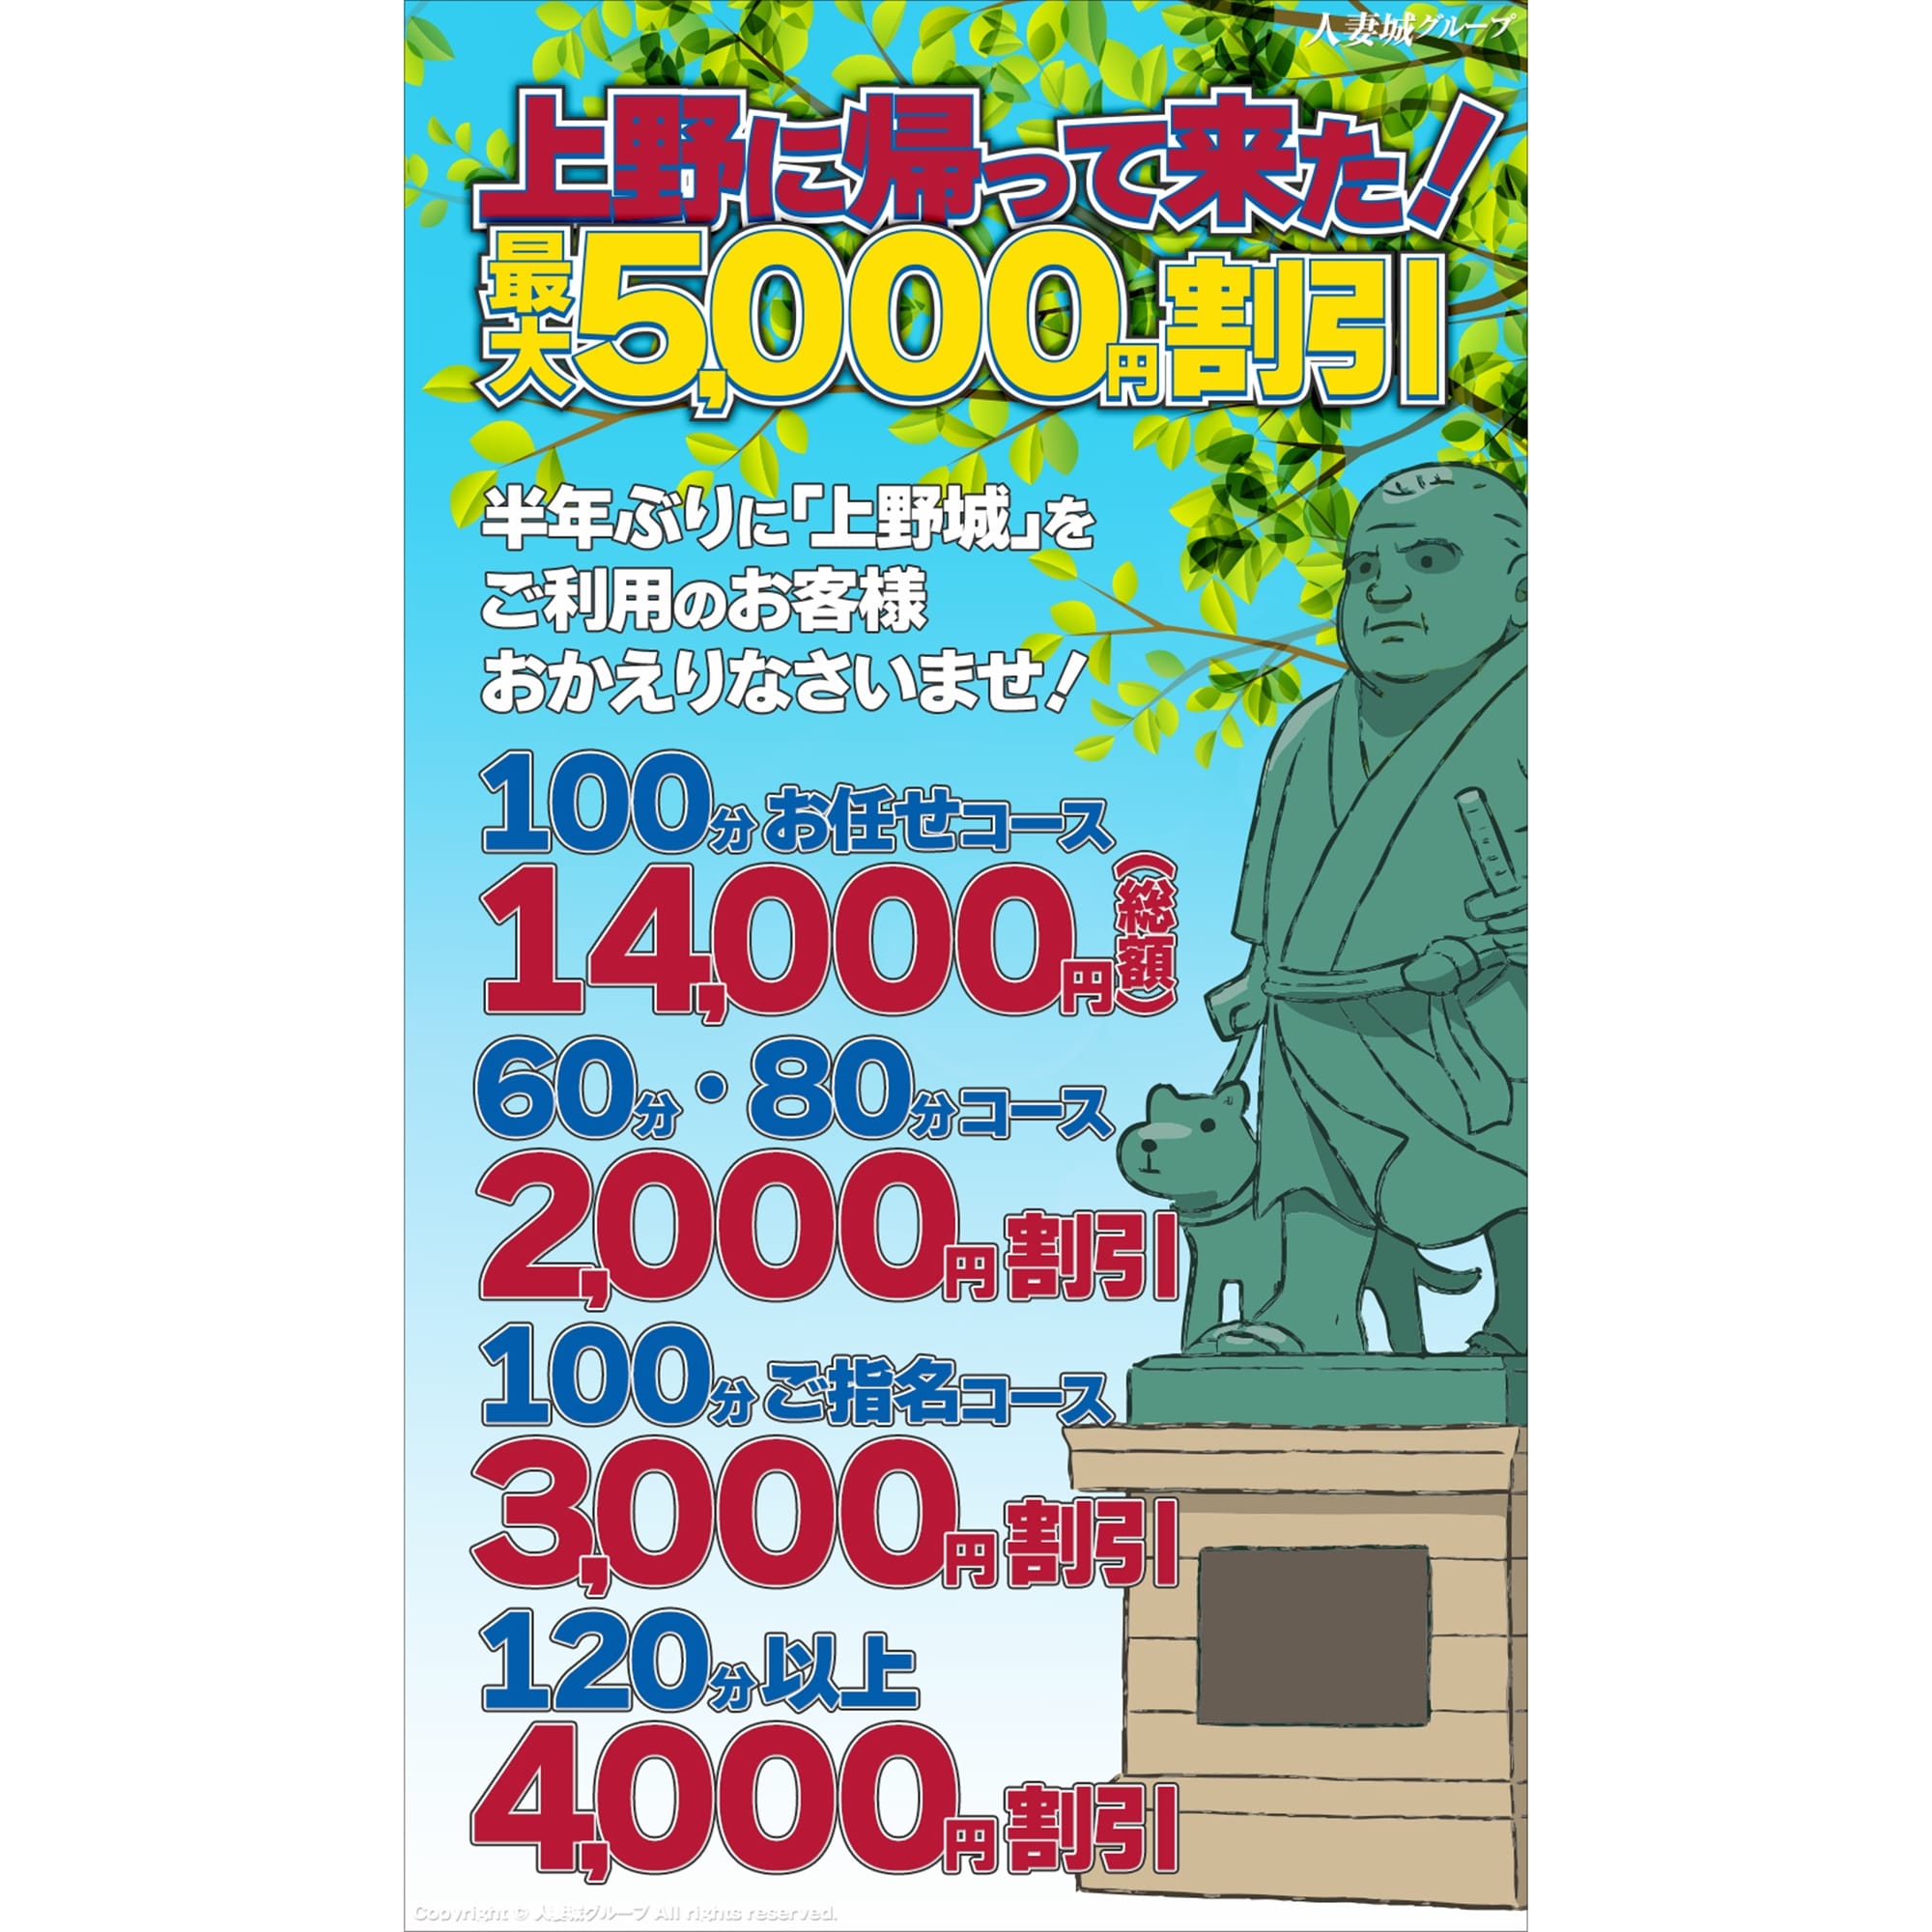 「上野に帰って来た!」04/26(金) 10:10 | 上野人妻城のお得なニュース